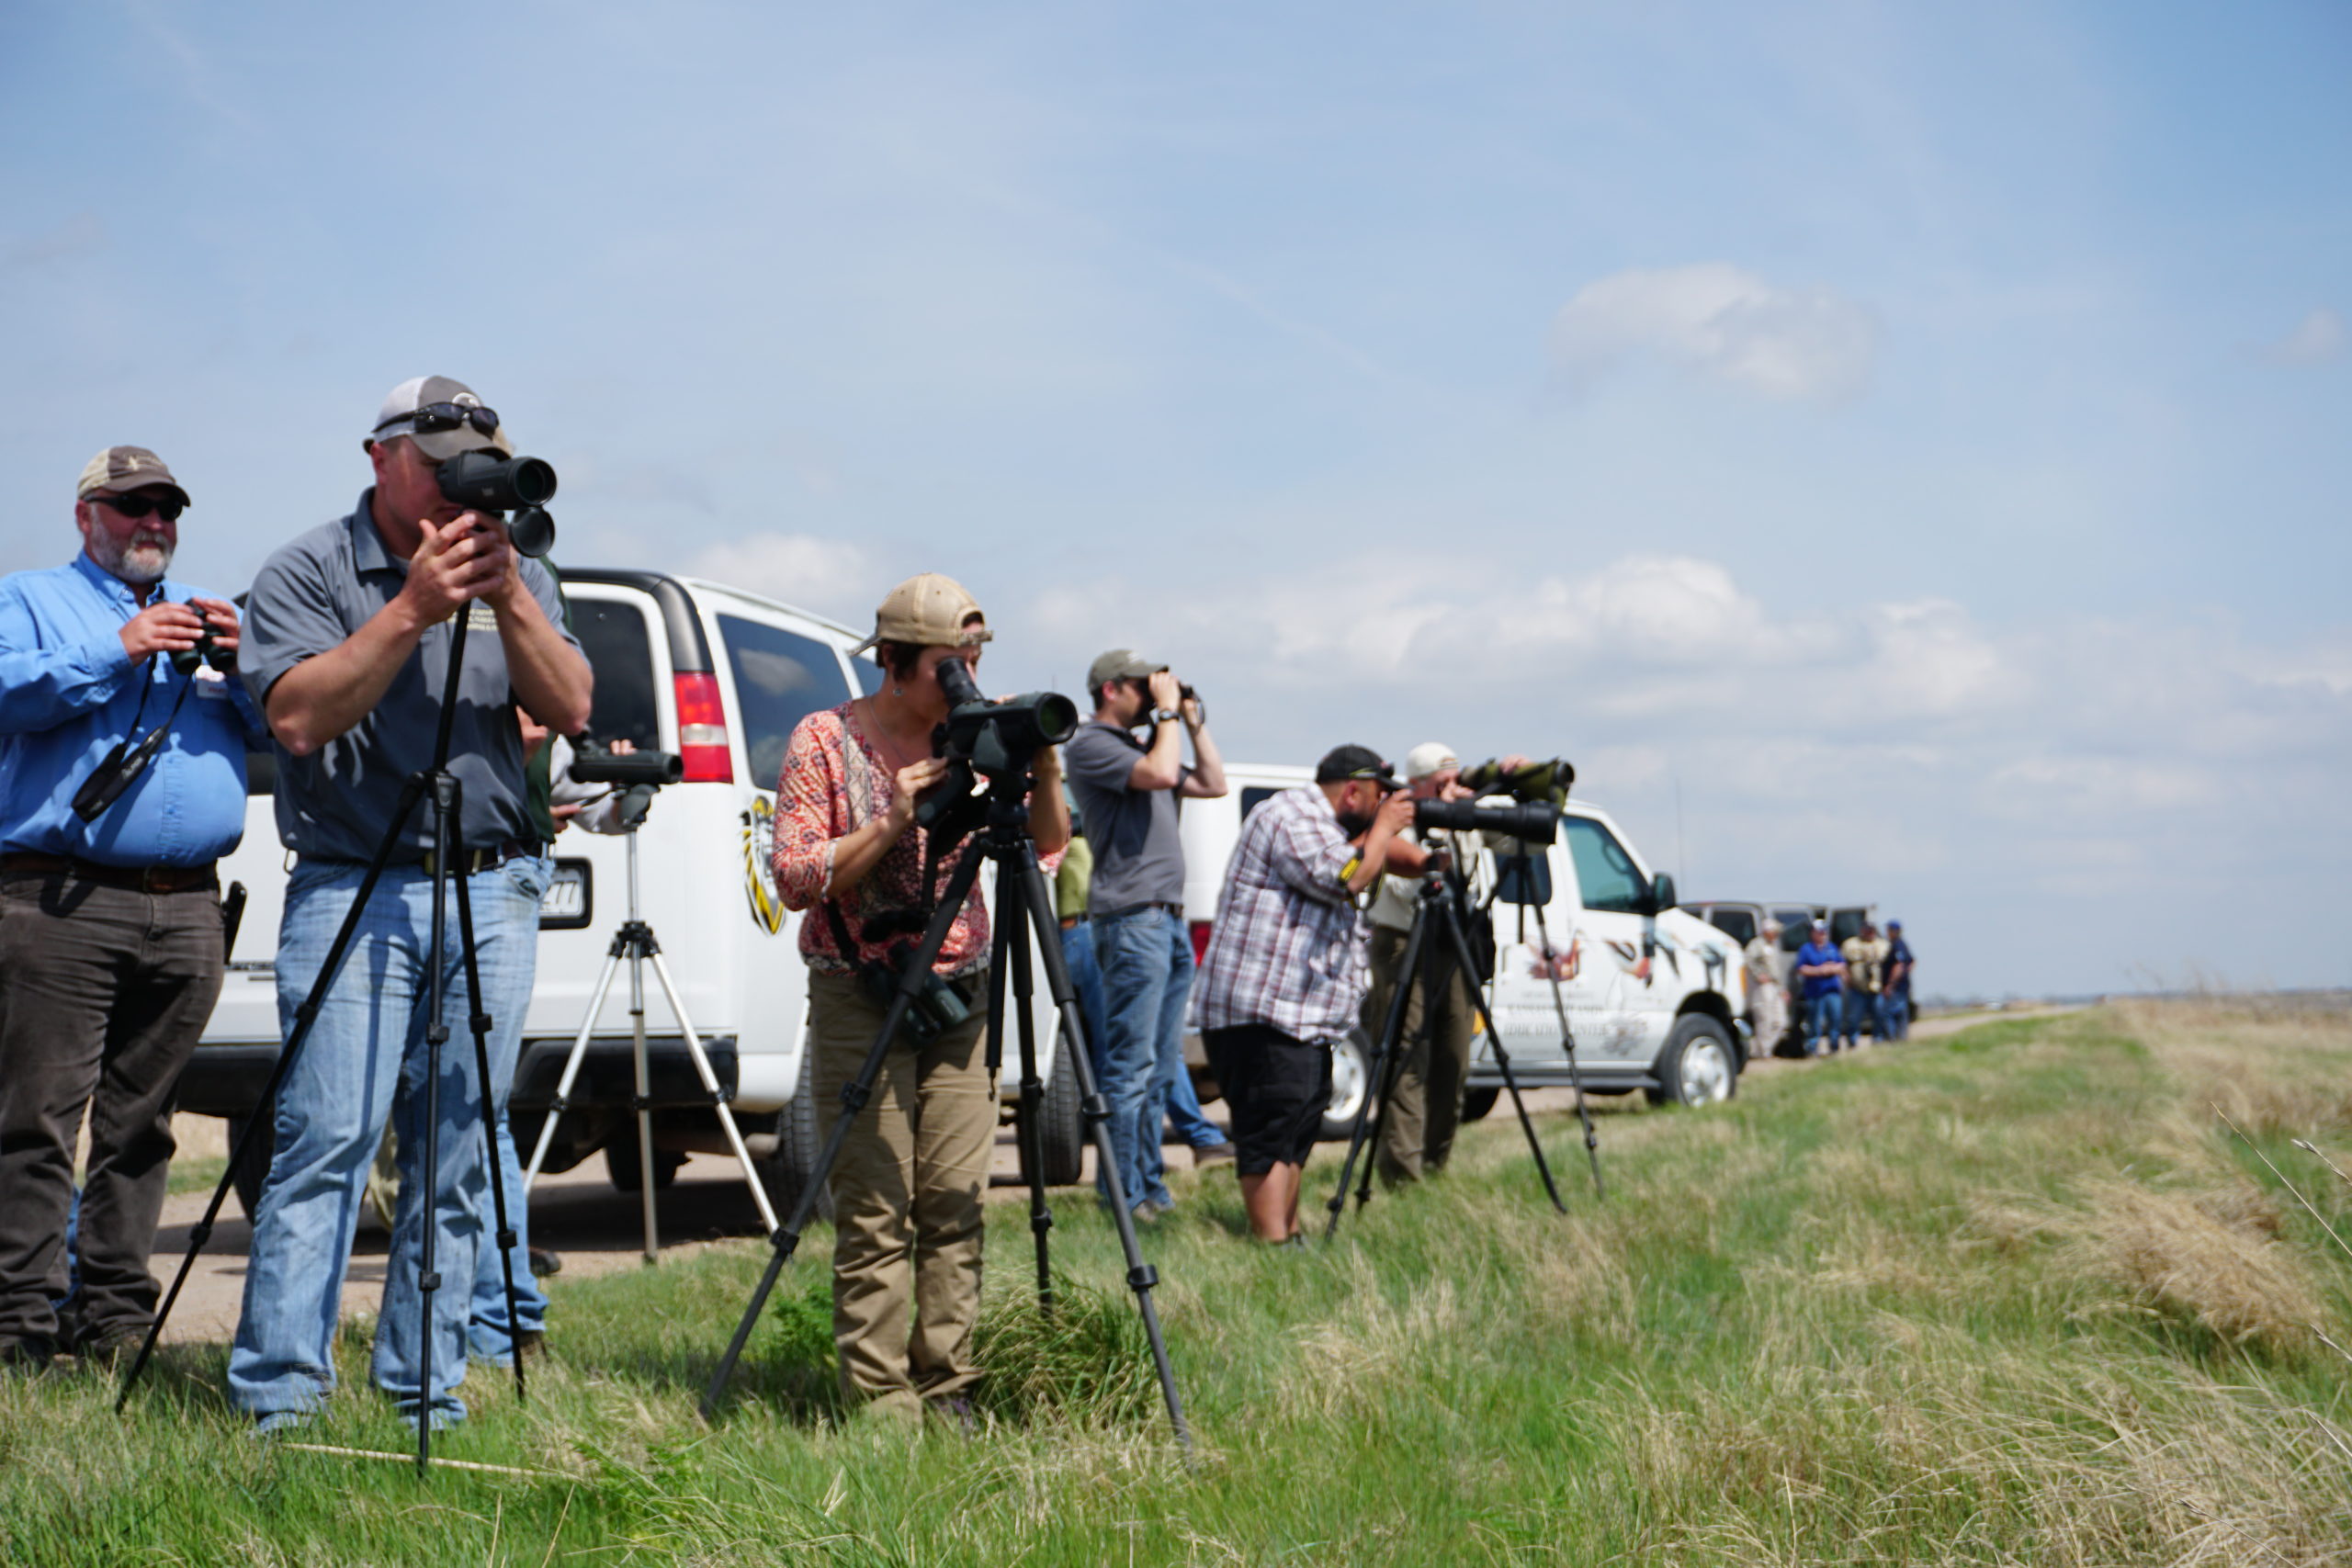 Shorebird surveying at Cheyenne Bottoms, Kansas (a WHSRN site).